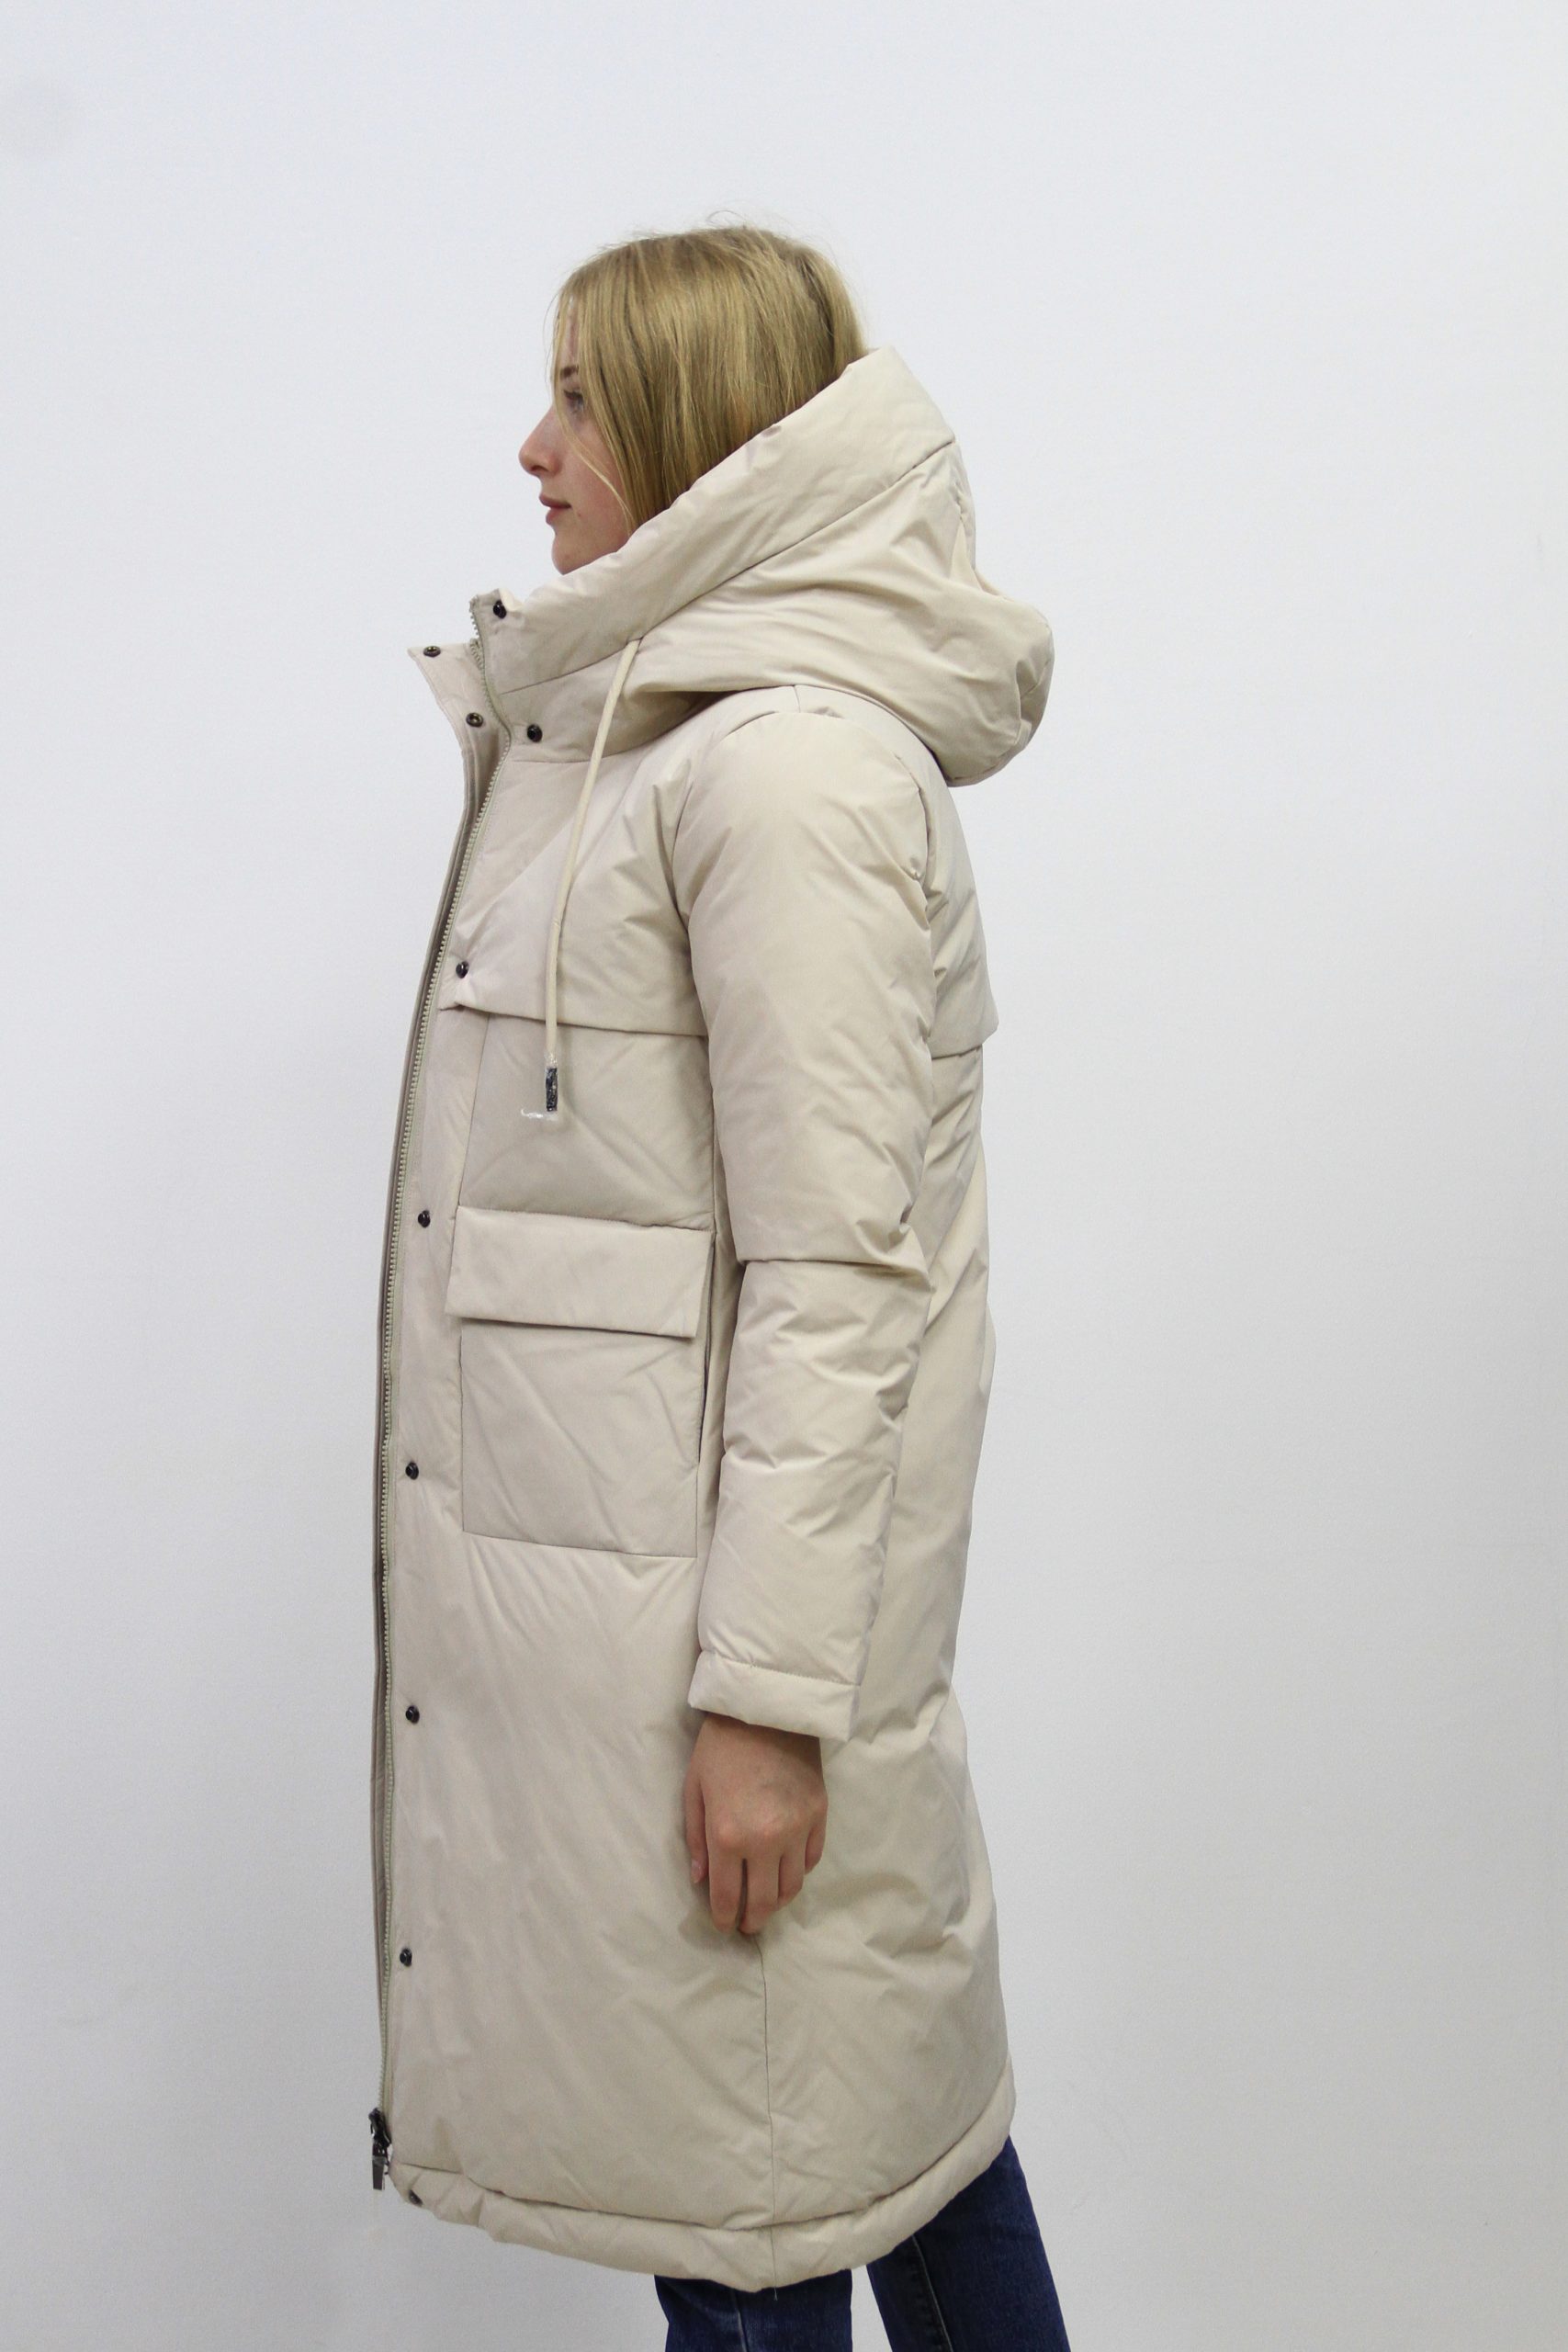 Зимняя куртка с  поясом (FineBabyCat)